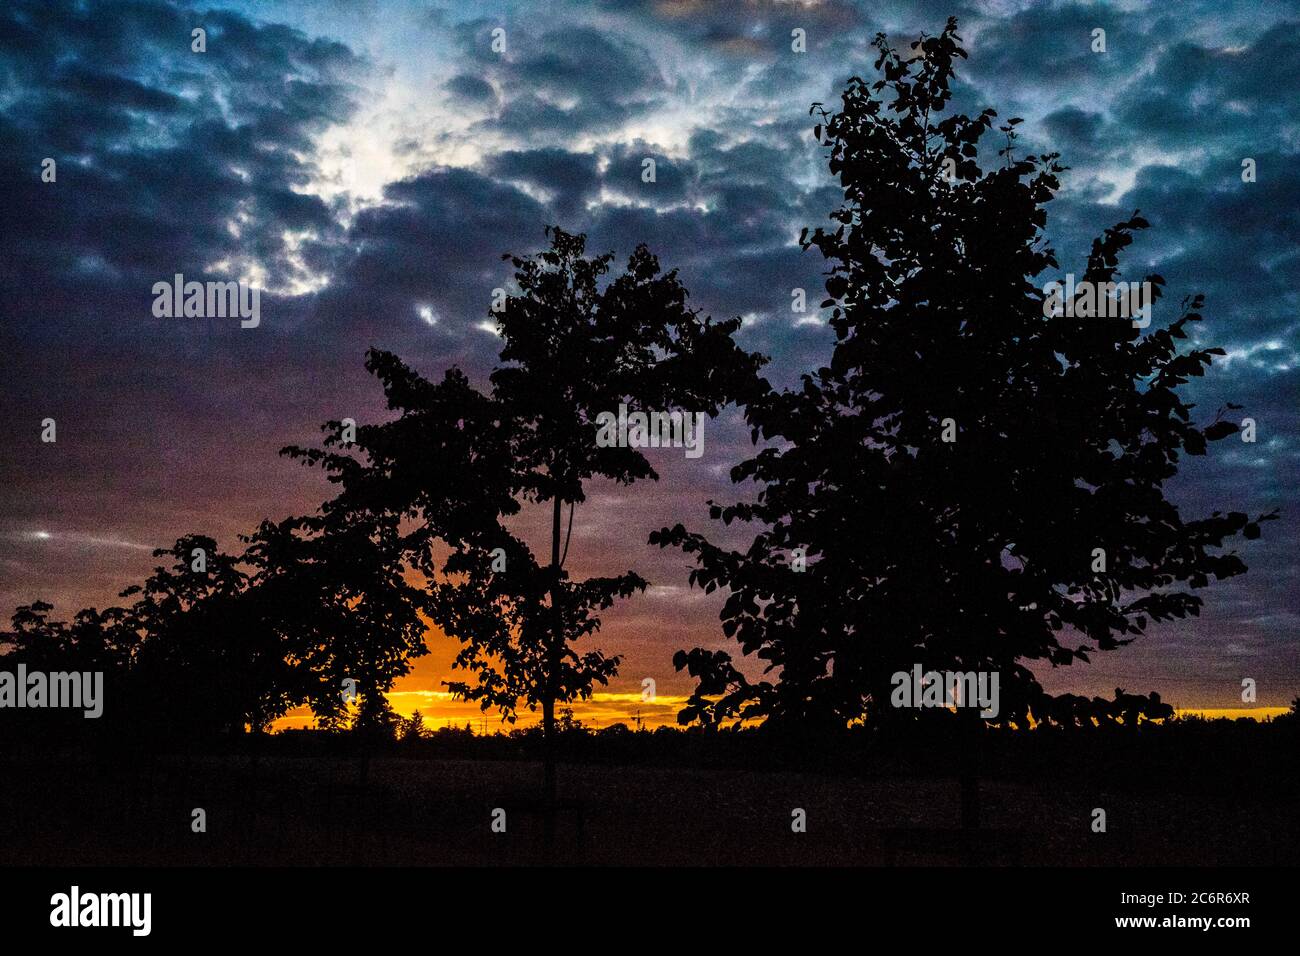 Poznan, Wielkopolska, Pologne. 11 juillet 2020. Le soir et le coucher du soleil de la journée d'été. Crédit: Dawid Tatarkiewicz/ZUMA Wire/Alay Live News Banque D'Images